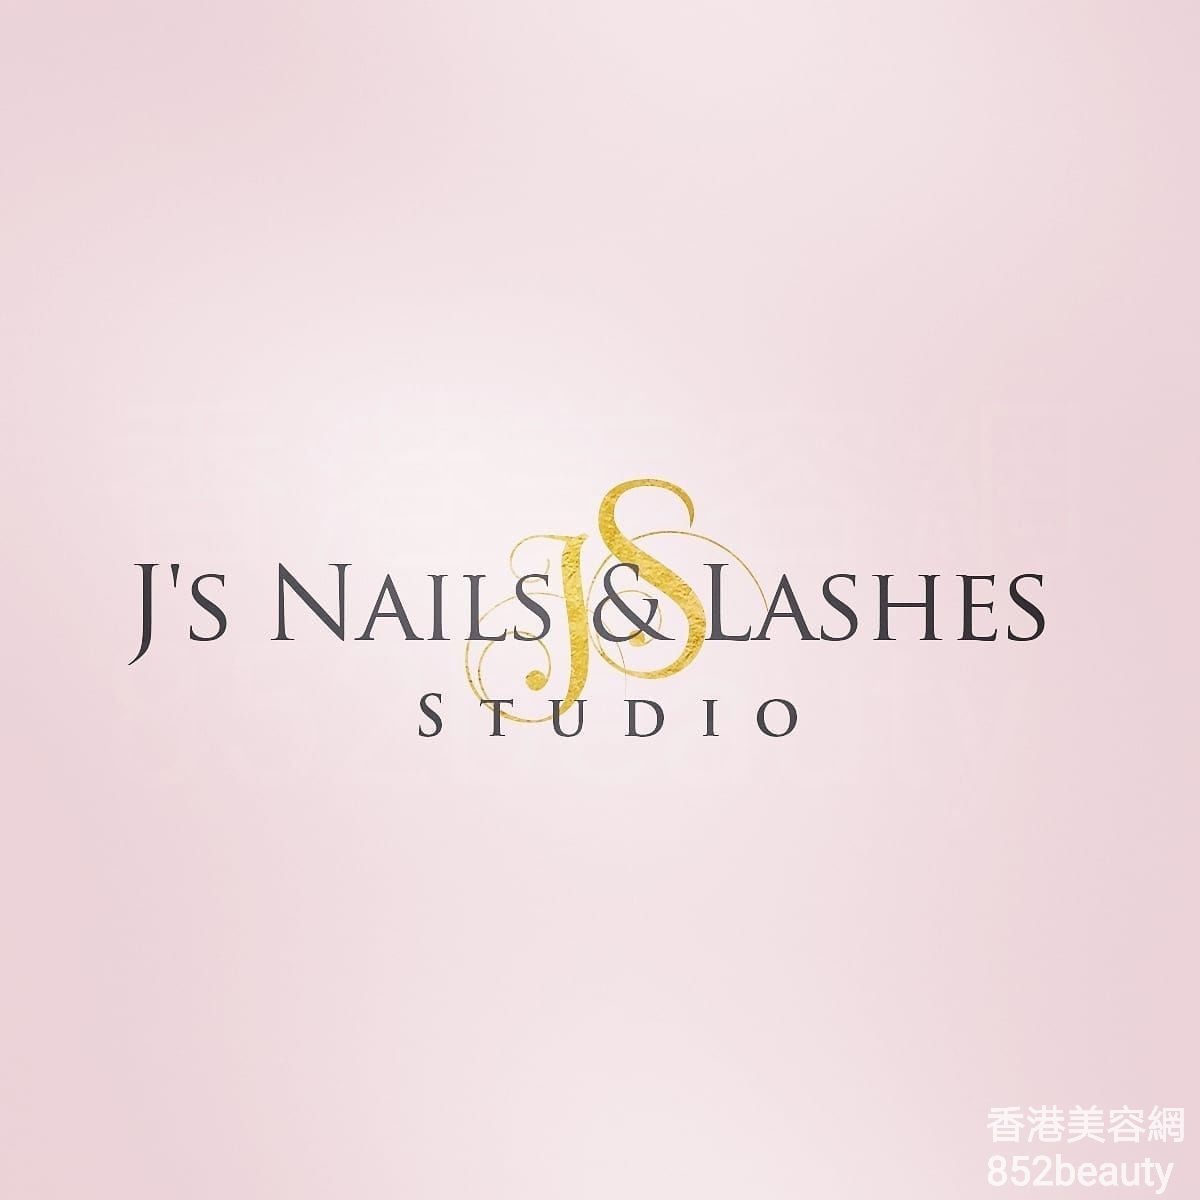 Beauty Salon: J's Nail